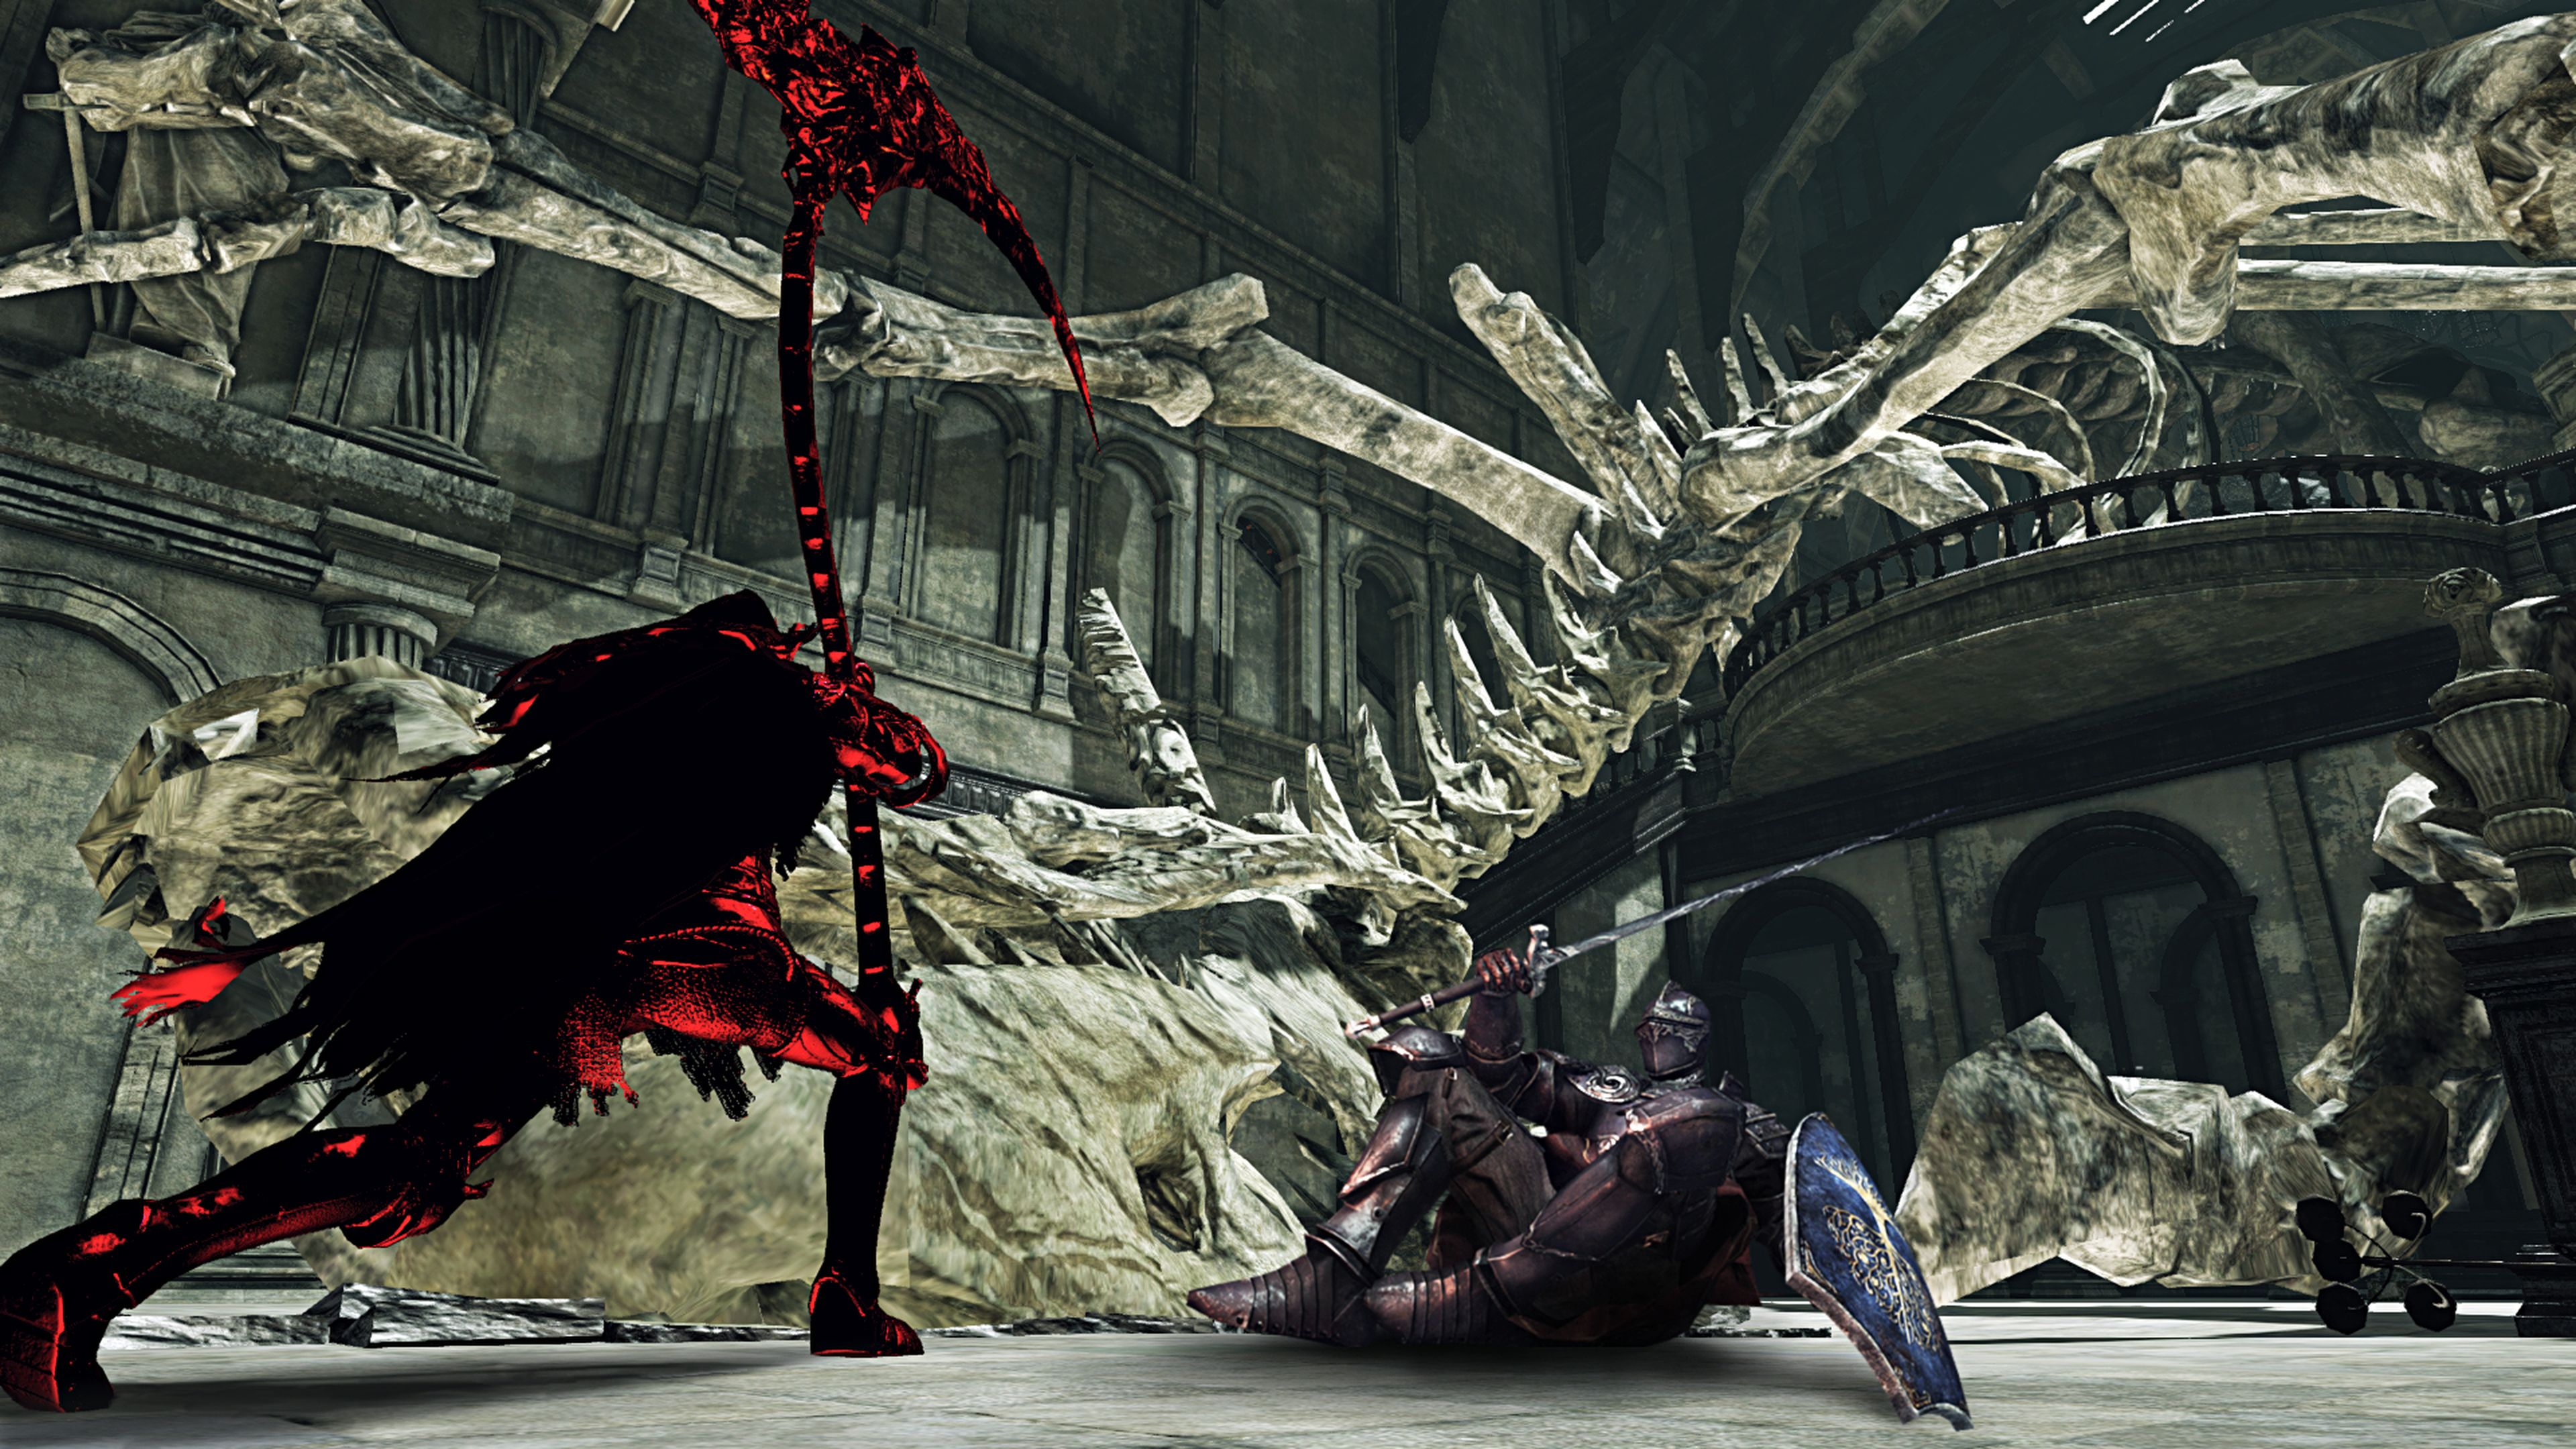 Avance de Dark Souls II Scholar of the First Sin en PS4 y Xbox One